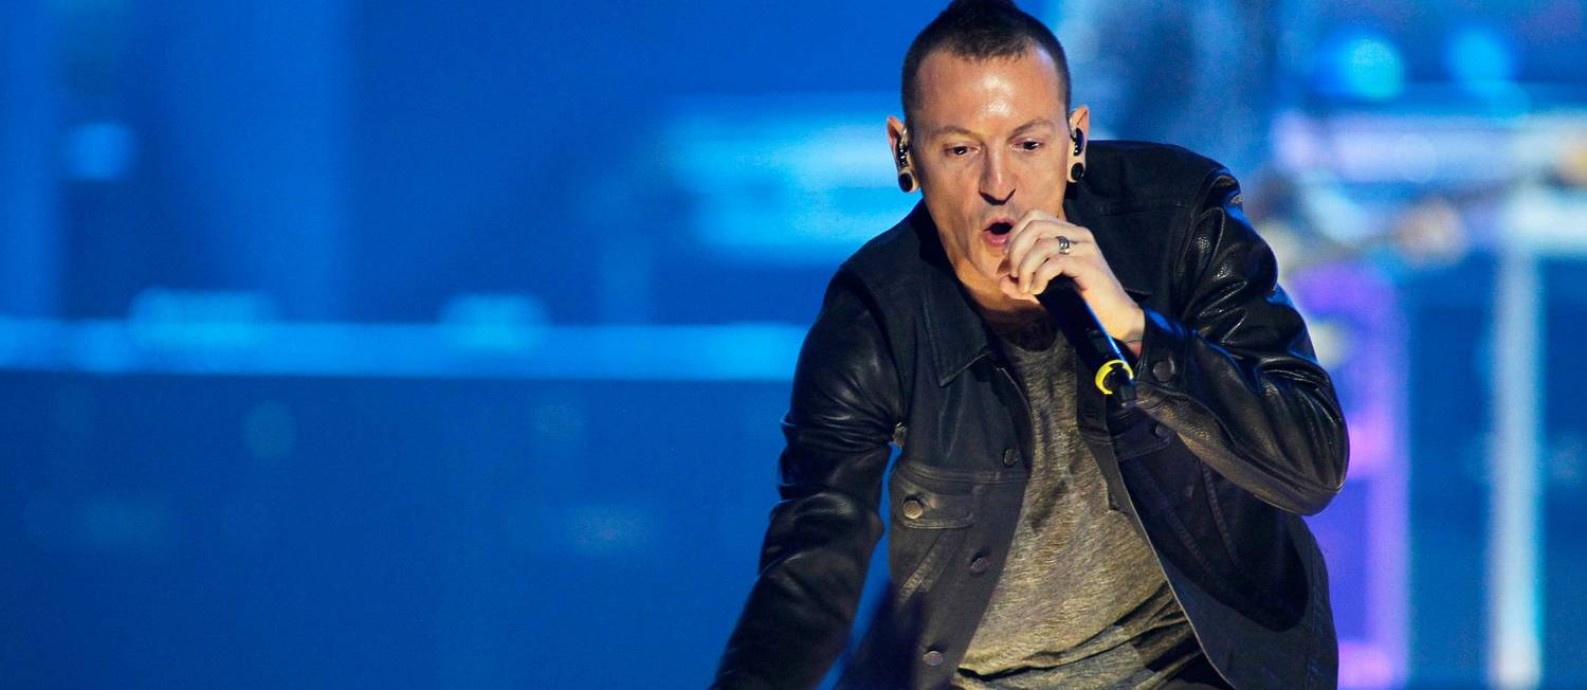 Linkin Park lançou clipe horas antes da divulgação da morte de Chester  Bennington - Jornal O Globo